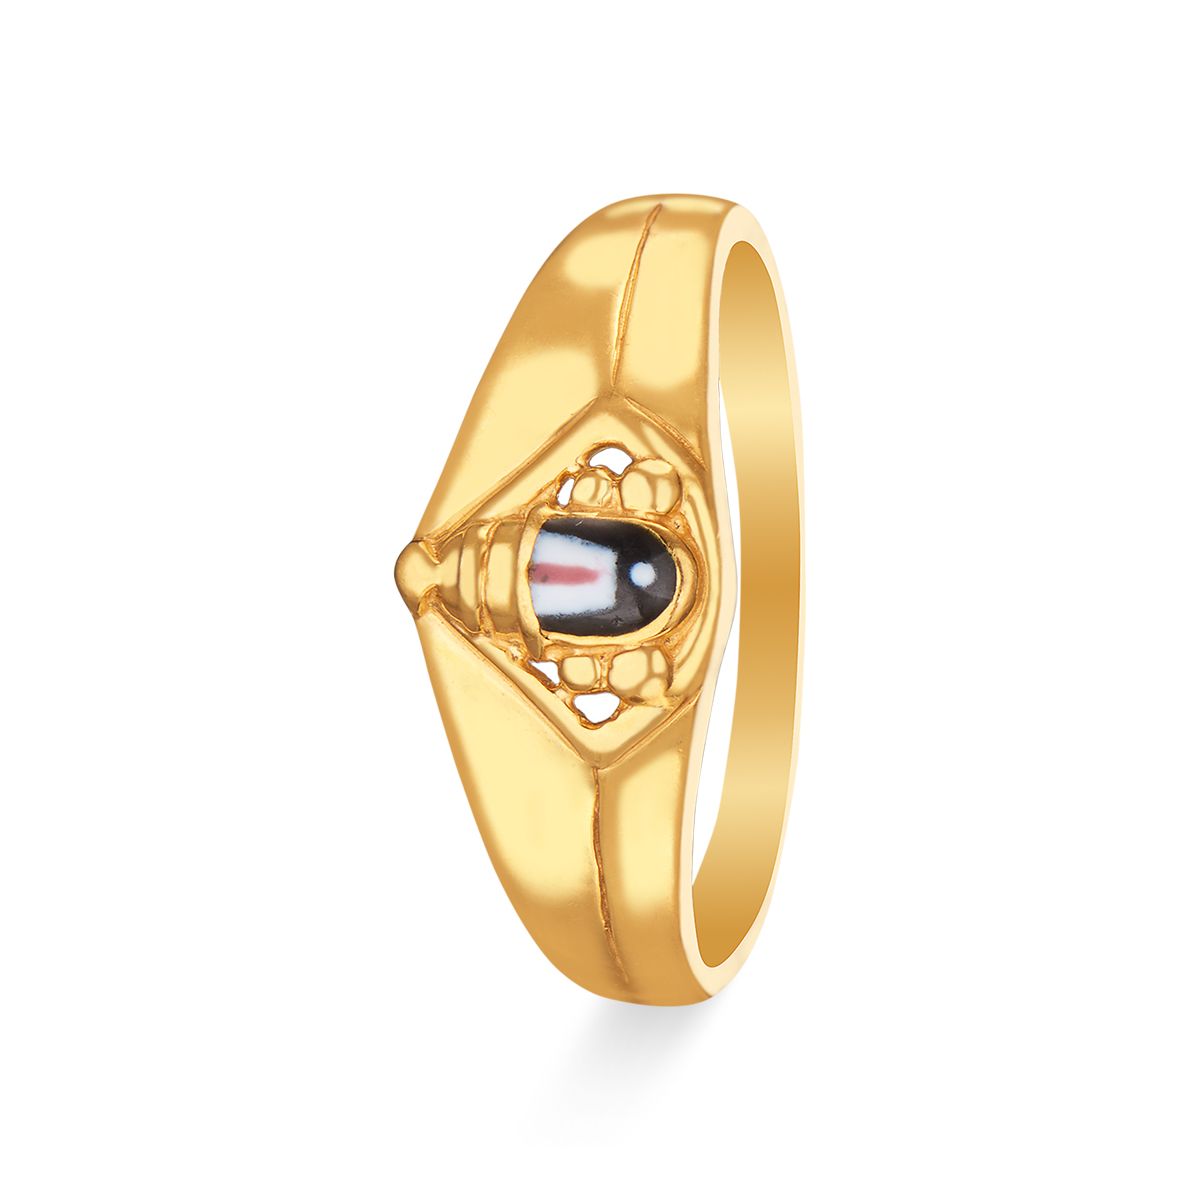 22K Gold 'Balaji' Ring For Men - 235-GR6682 in 5.450 Grams